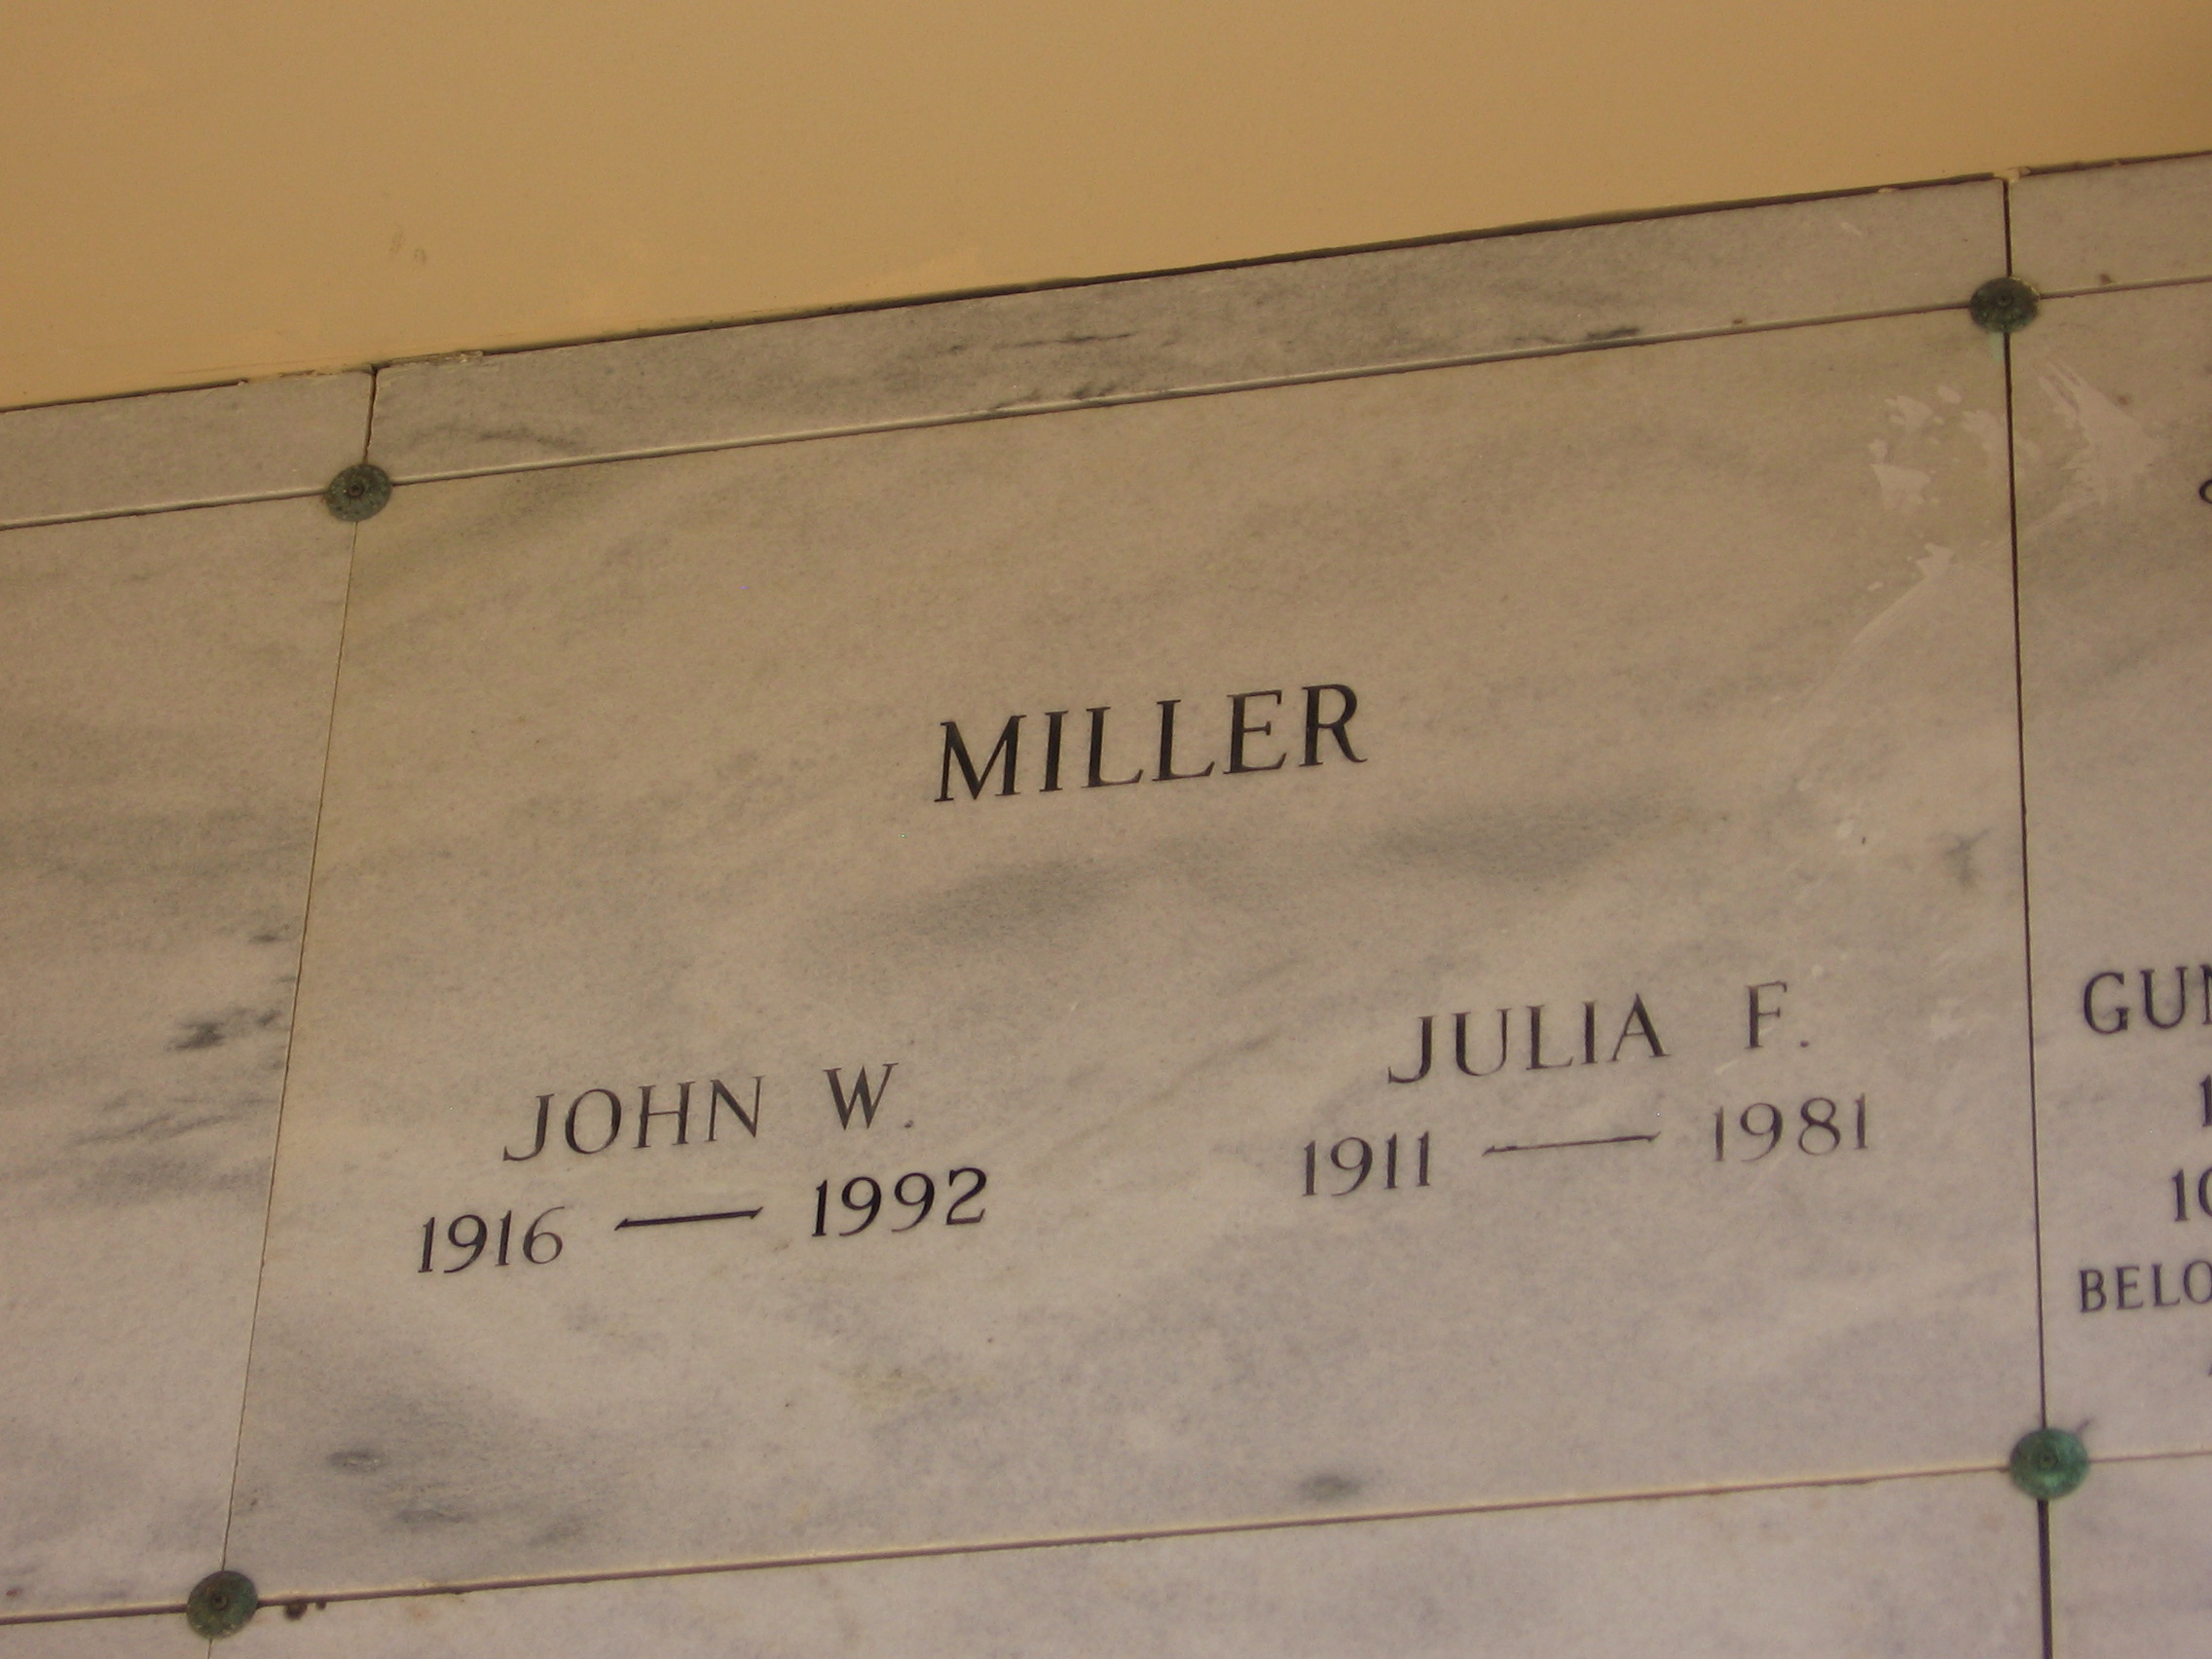 John W Miller